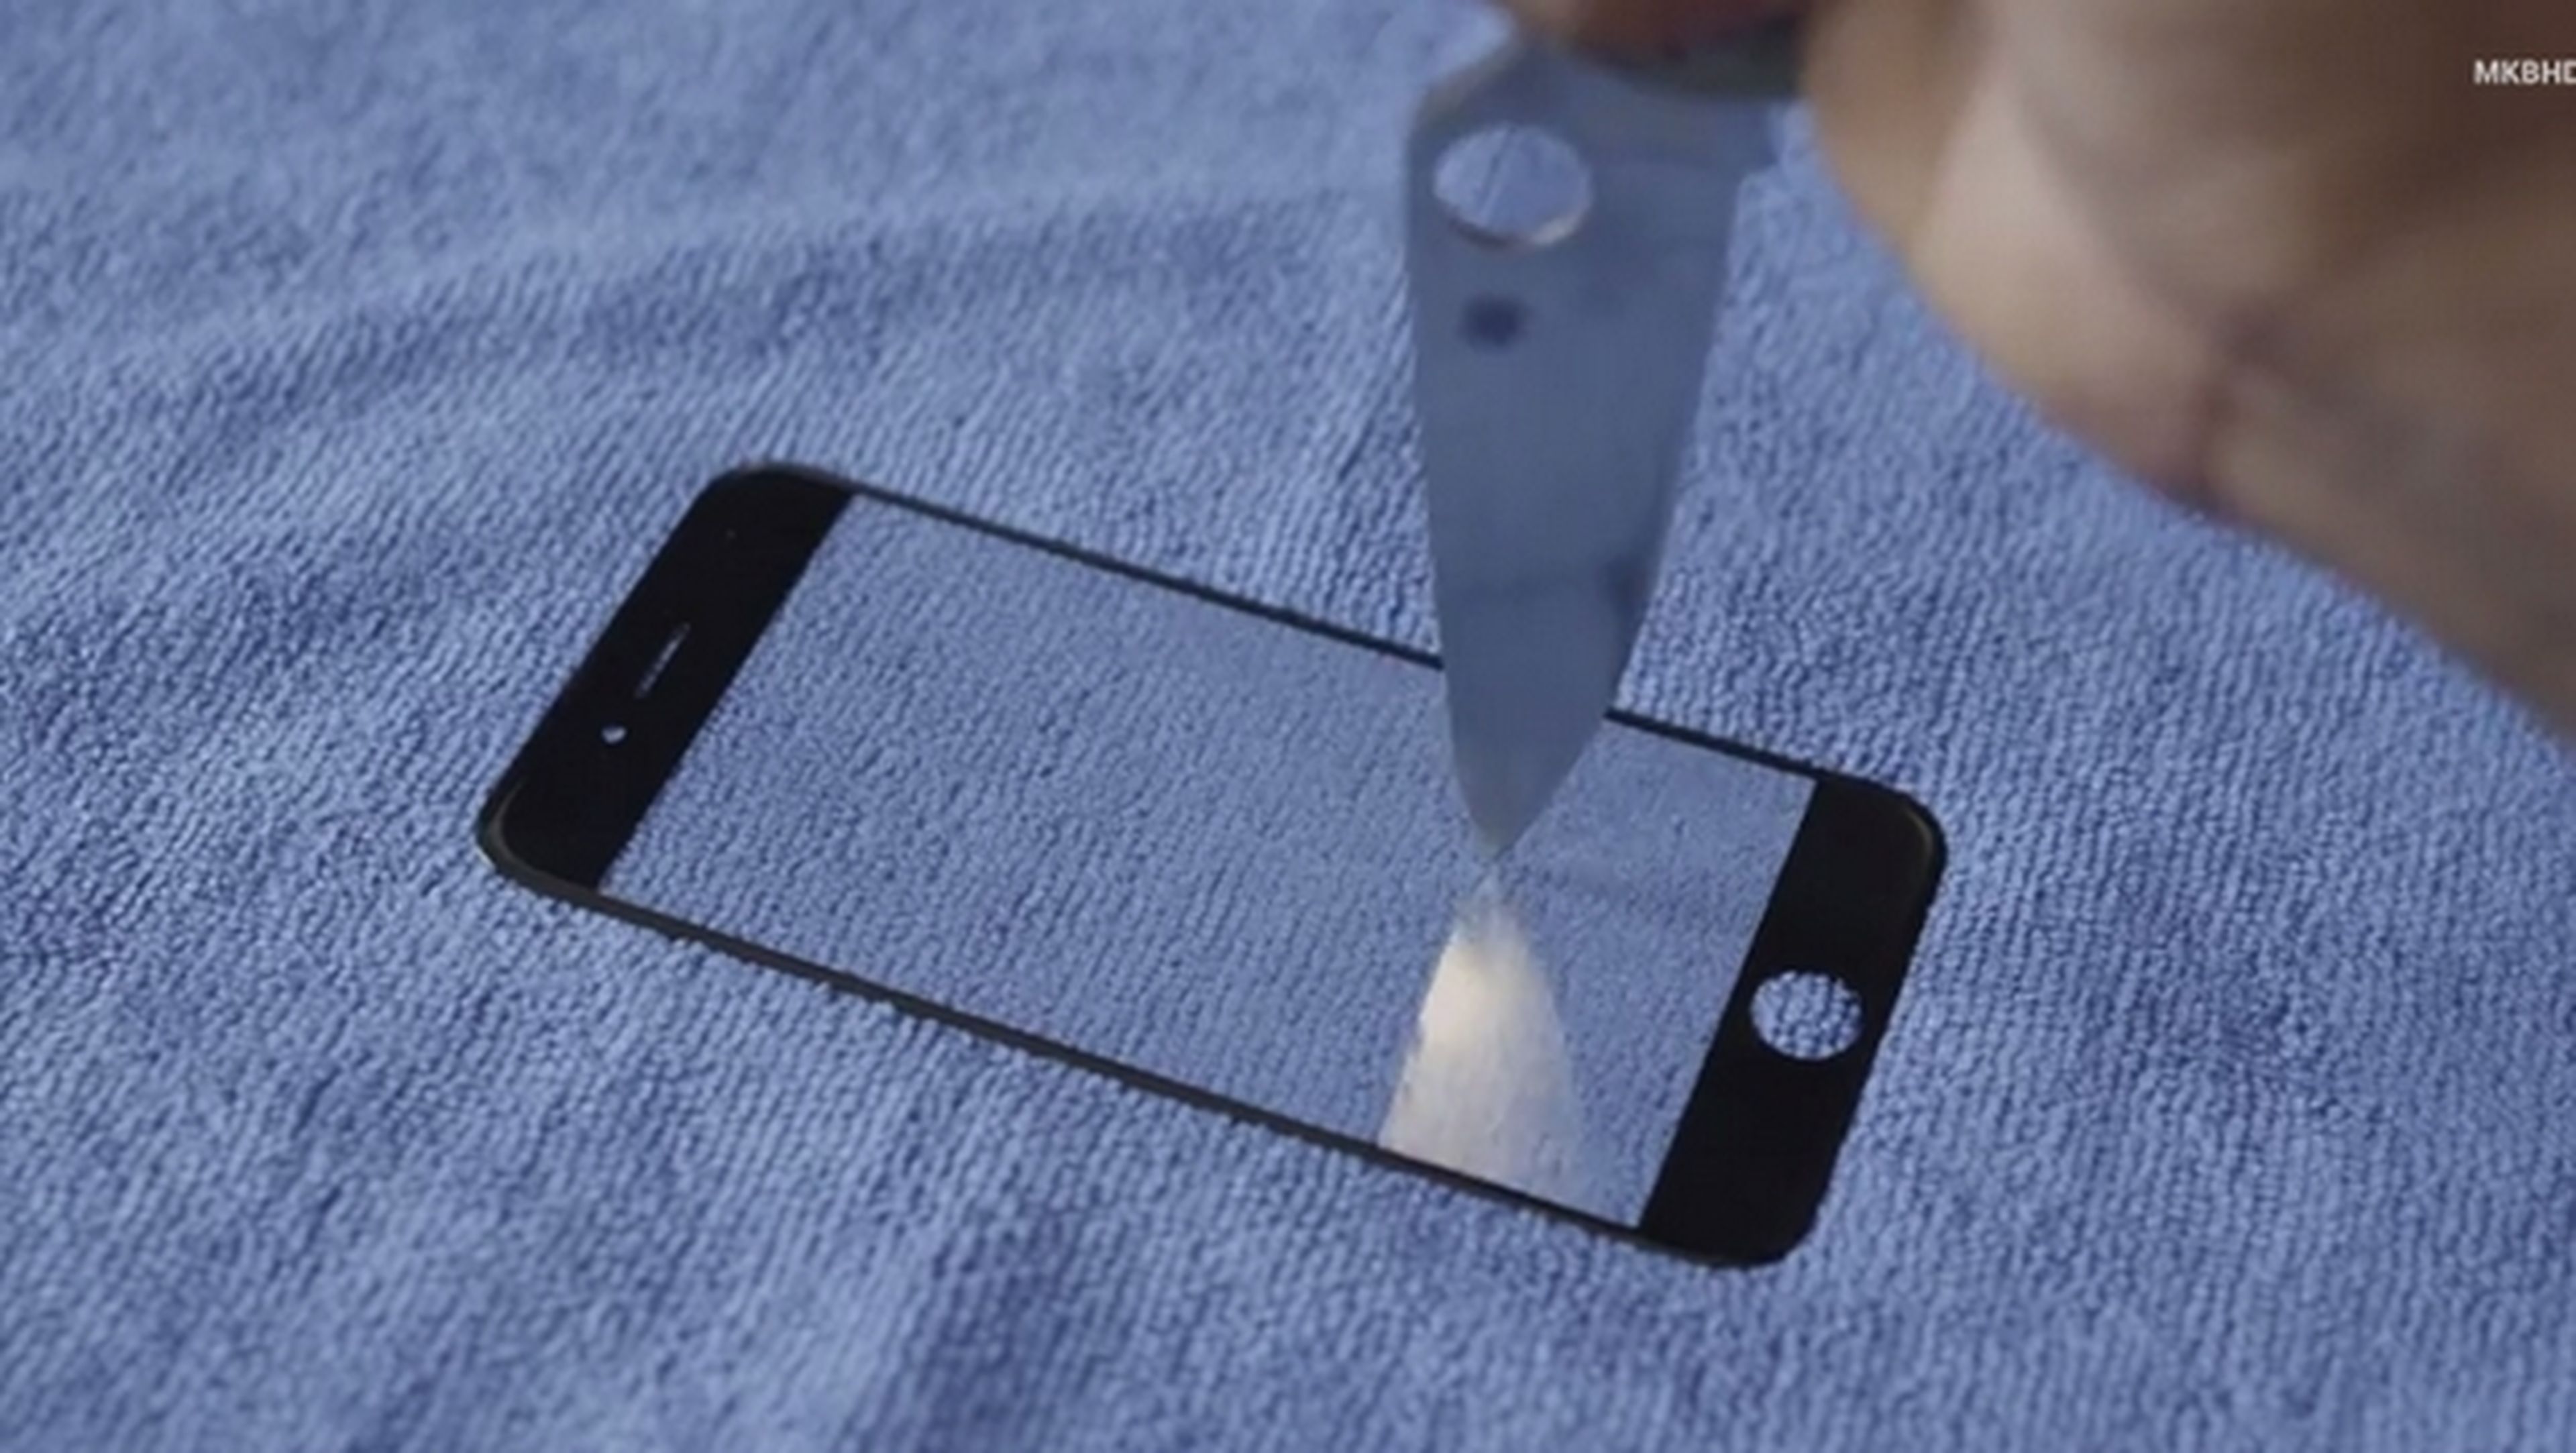 La pantalla de zafiro del iPhone 6 es acuchillada, rasgada con unas llaves, pisoteada... Y aguanta sin un rasguño.